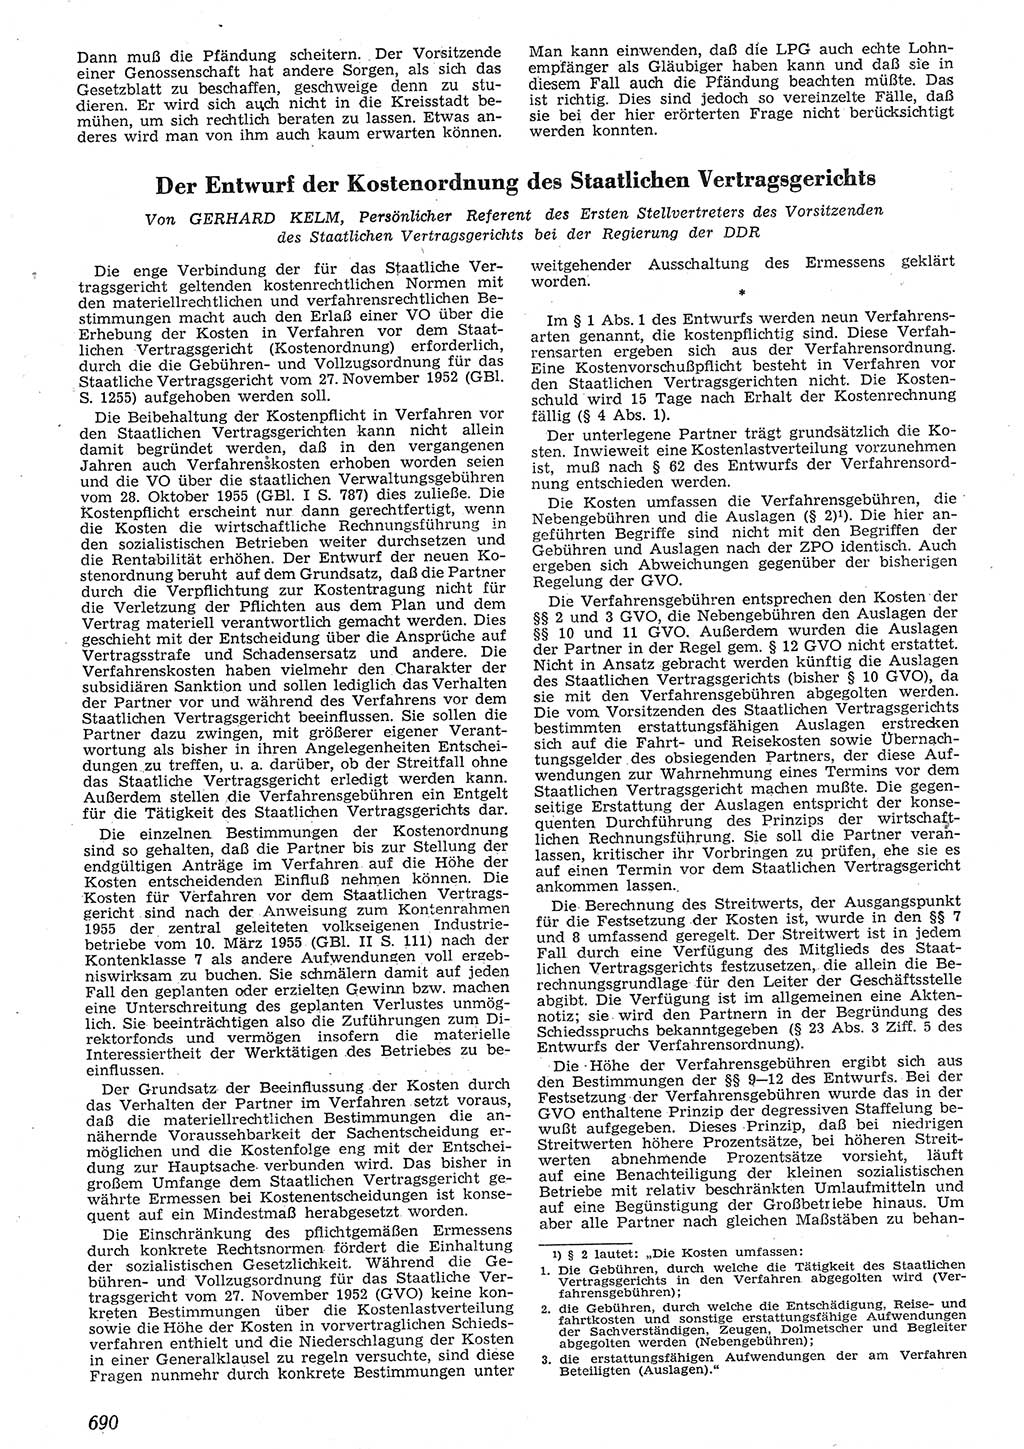 Neue Justiz (NJ), Zeitschrift für Recht und Rechtswissenschaft [Deutsche Demokratische Republik (DDR)], 10. Jahrgang 1956, Seite 690 (NJ DDR 1956, S. 690)